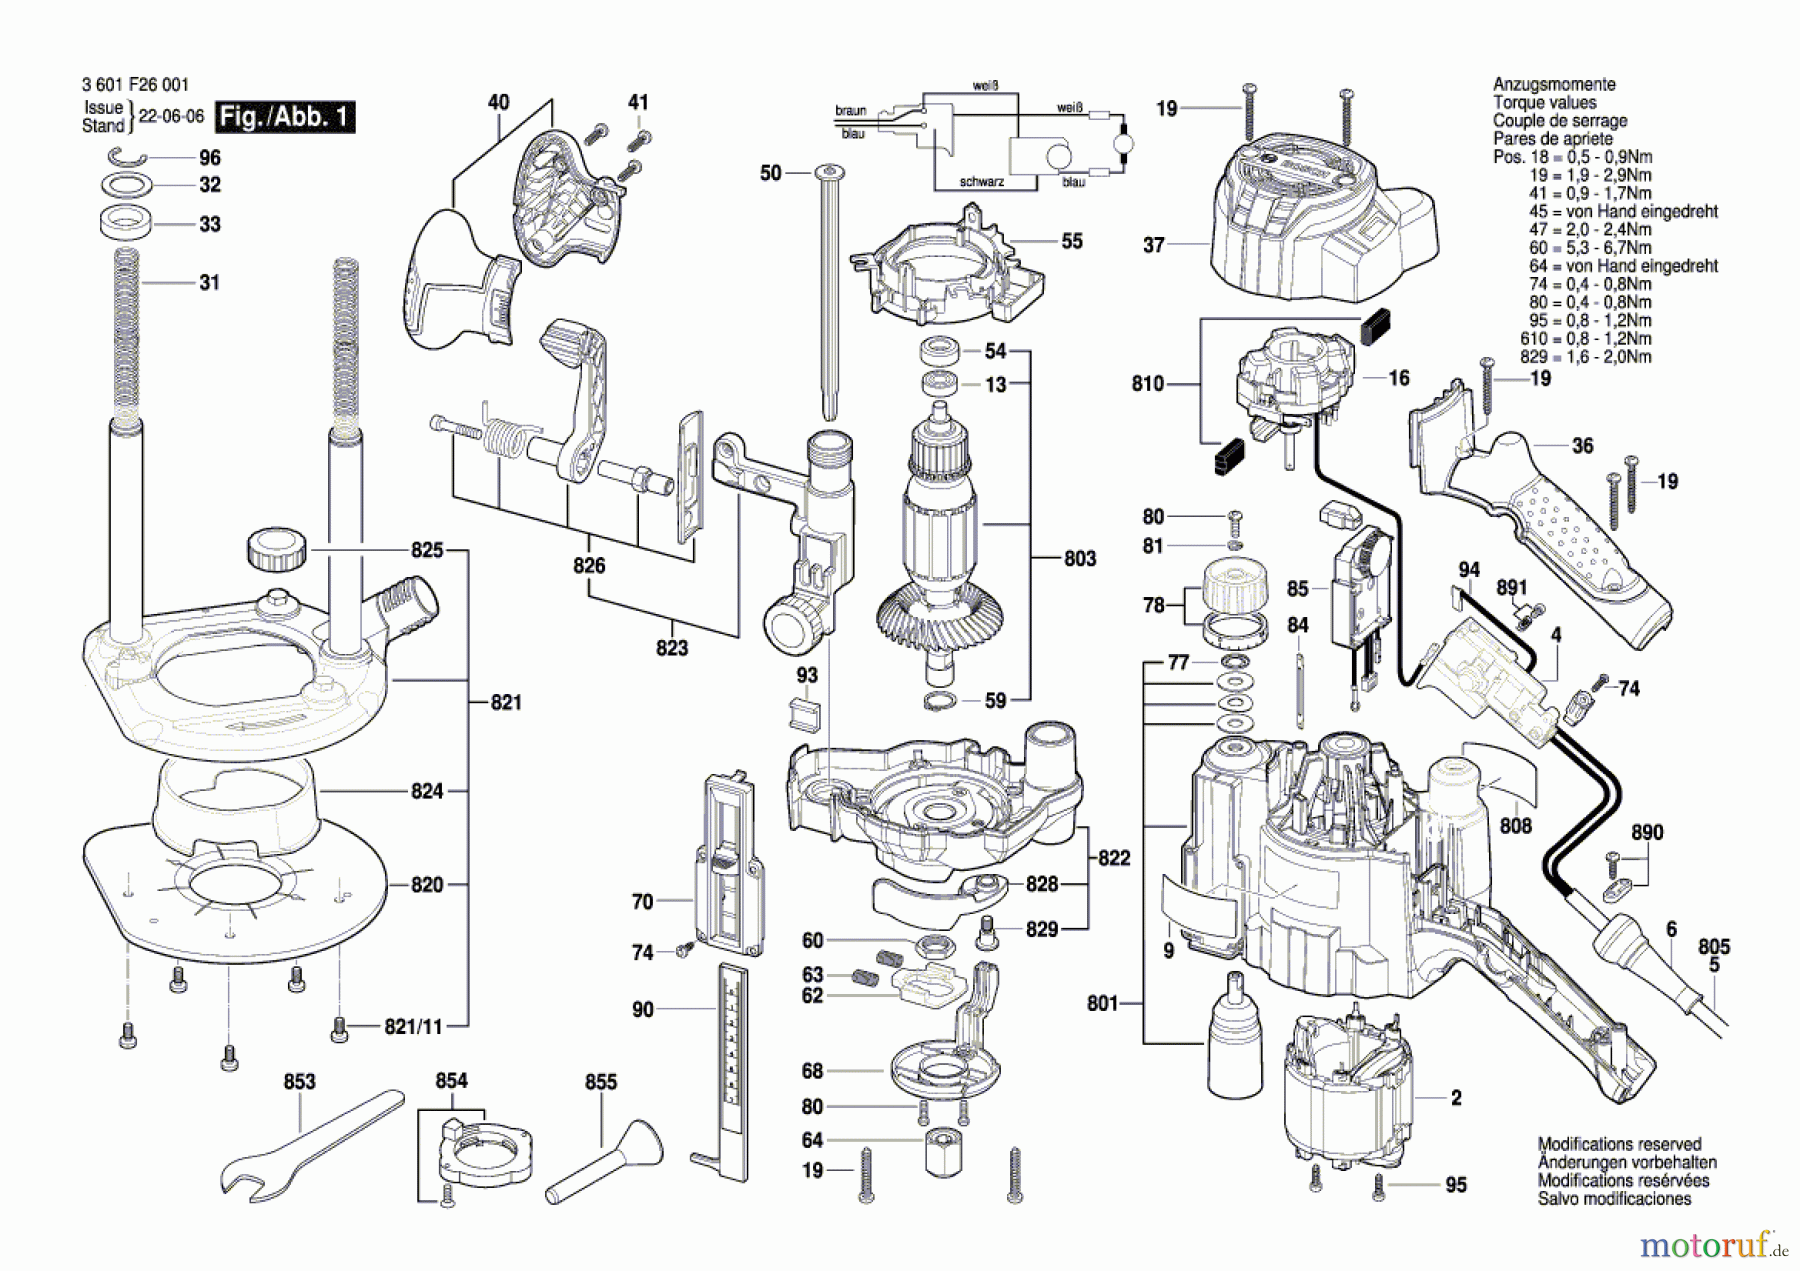  Bosch Werkzeug Oberfräse GOF 1250 CE Seite 1